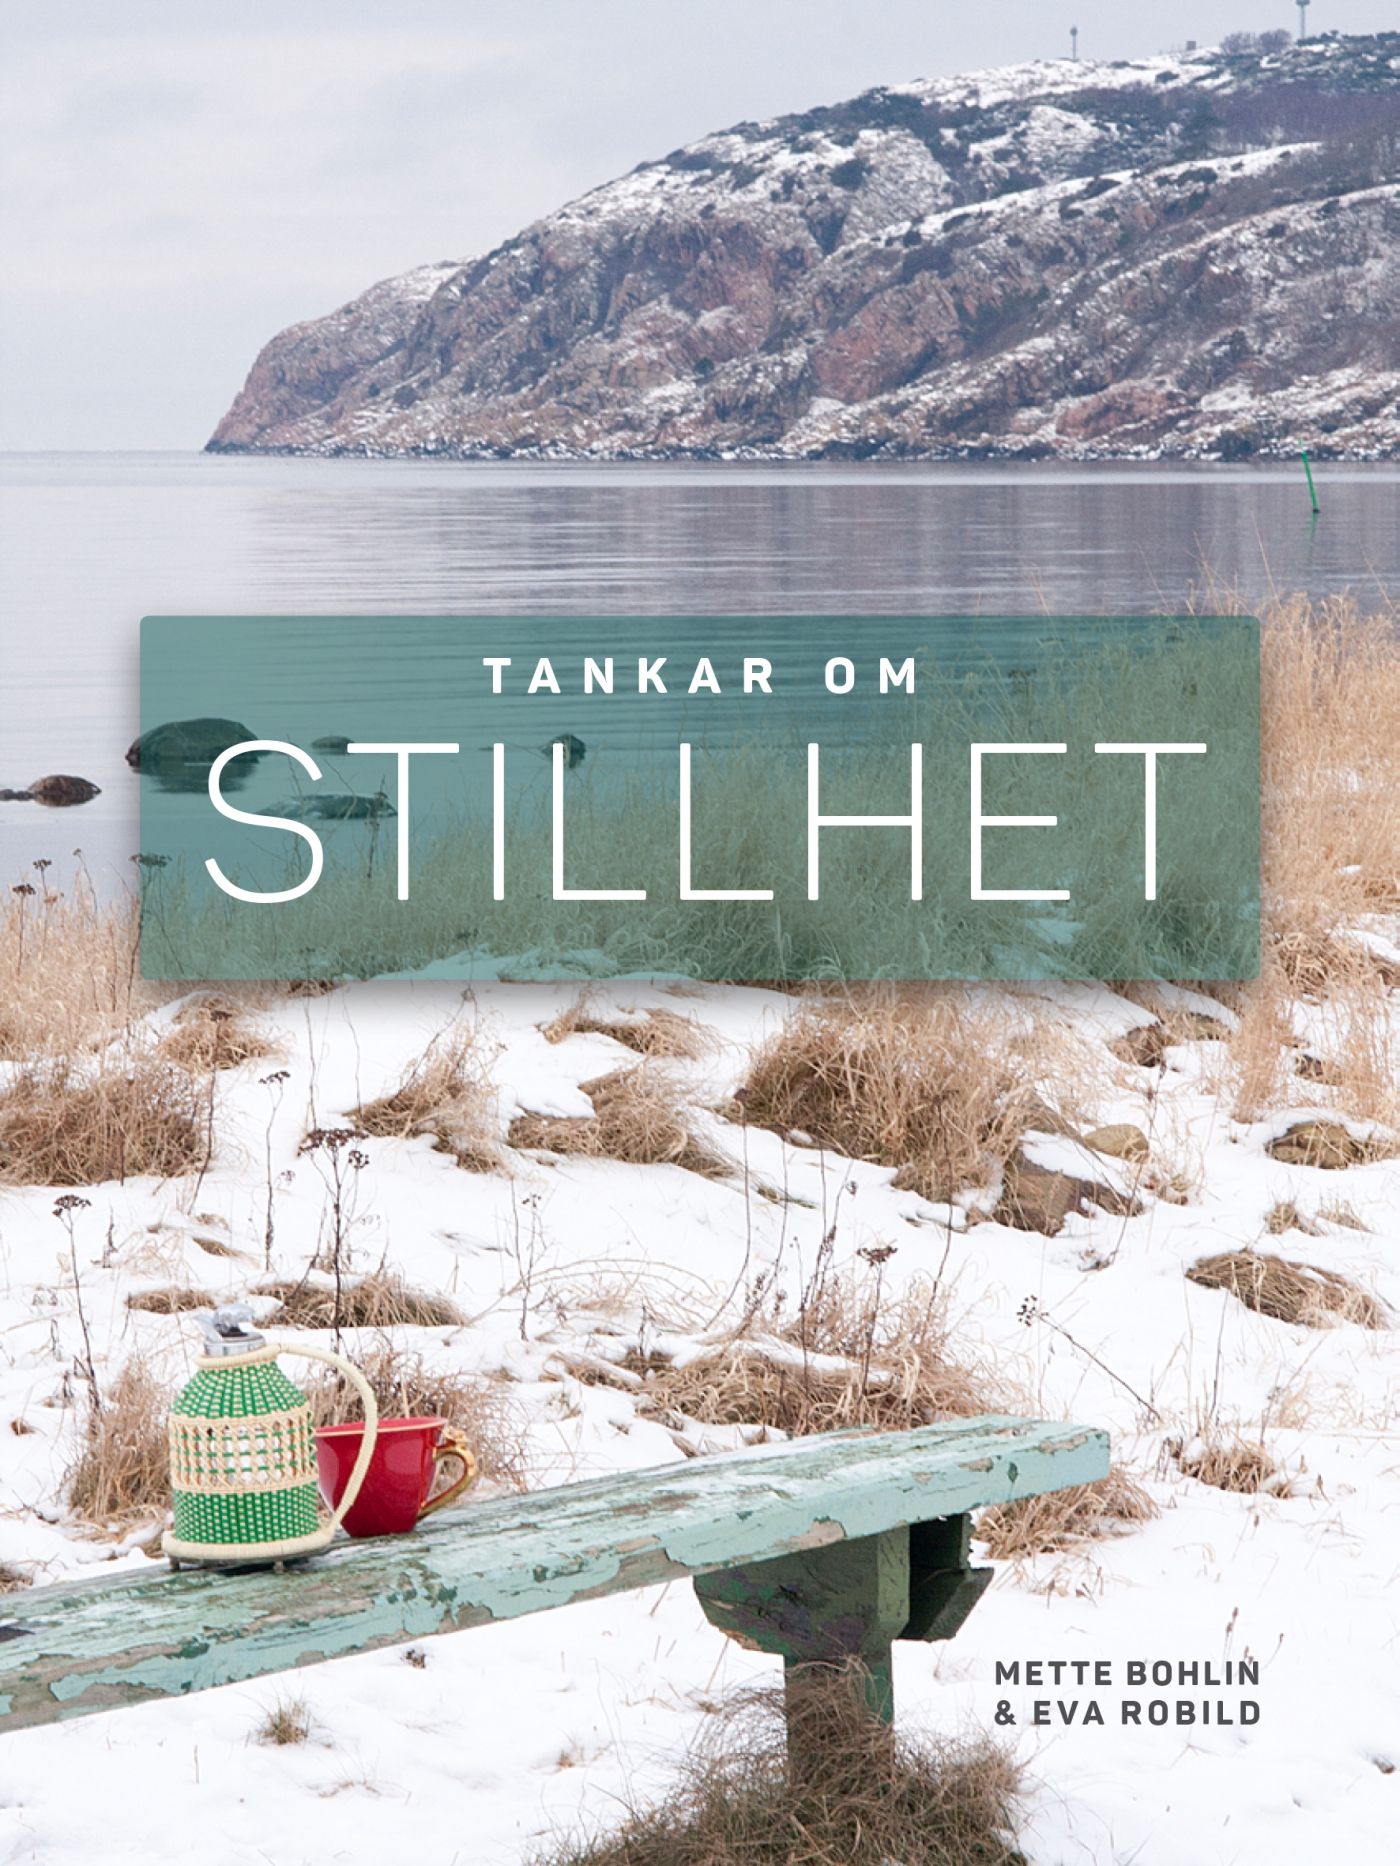 Tankar om Stillhet, e-bog af Mette Bohlin, Eva Robild